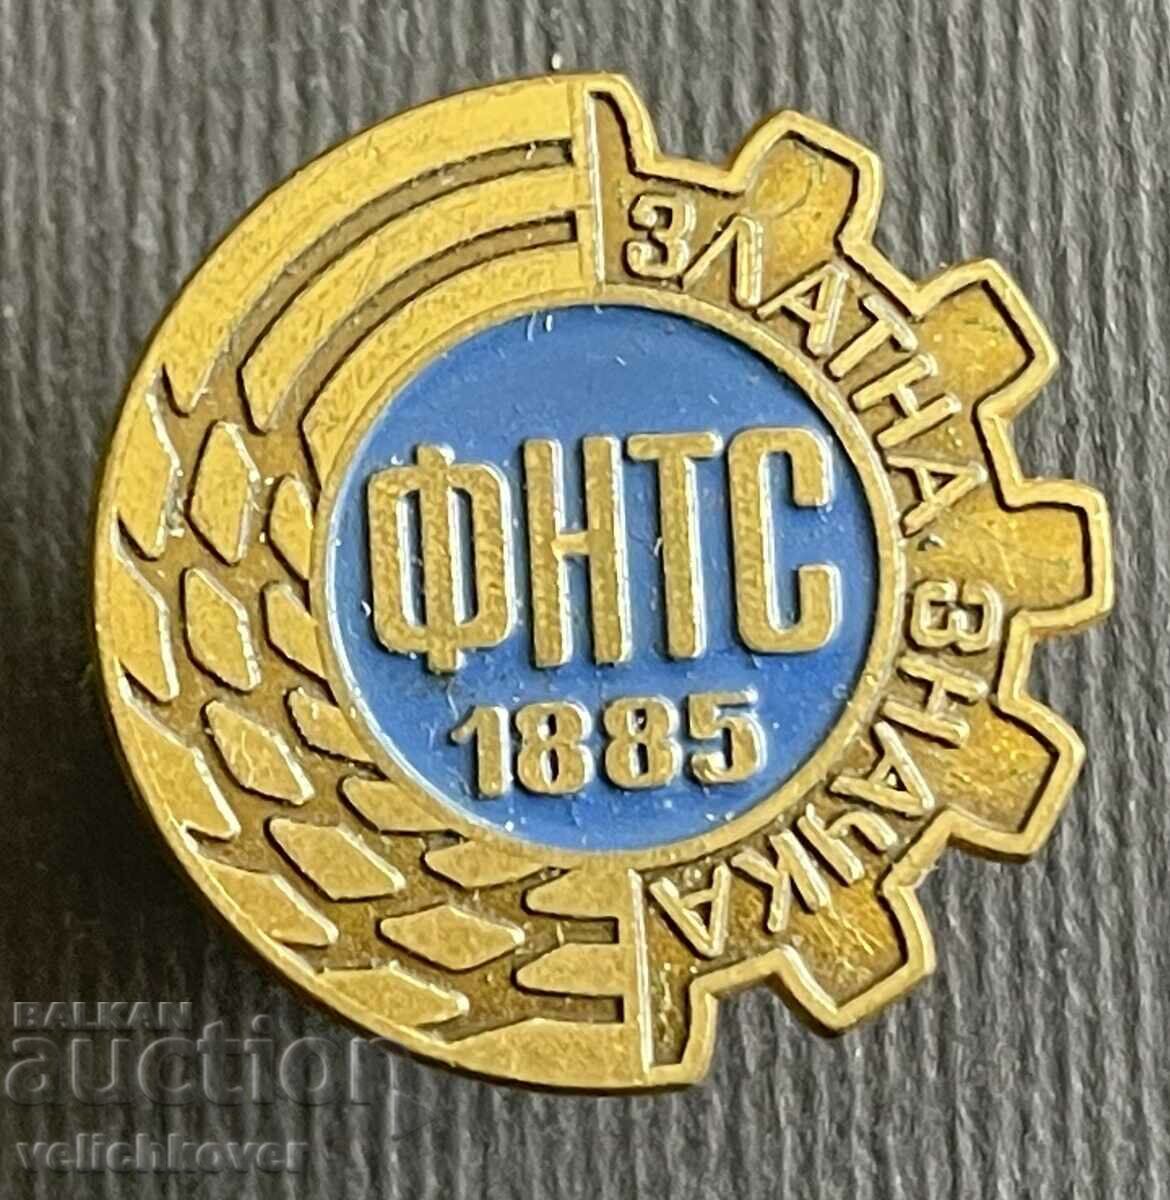 36596 Bulgaria Golden Badge Επιστημονική και Τεχνική Ένωση Ταμείο 90-